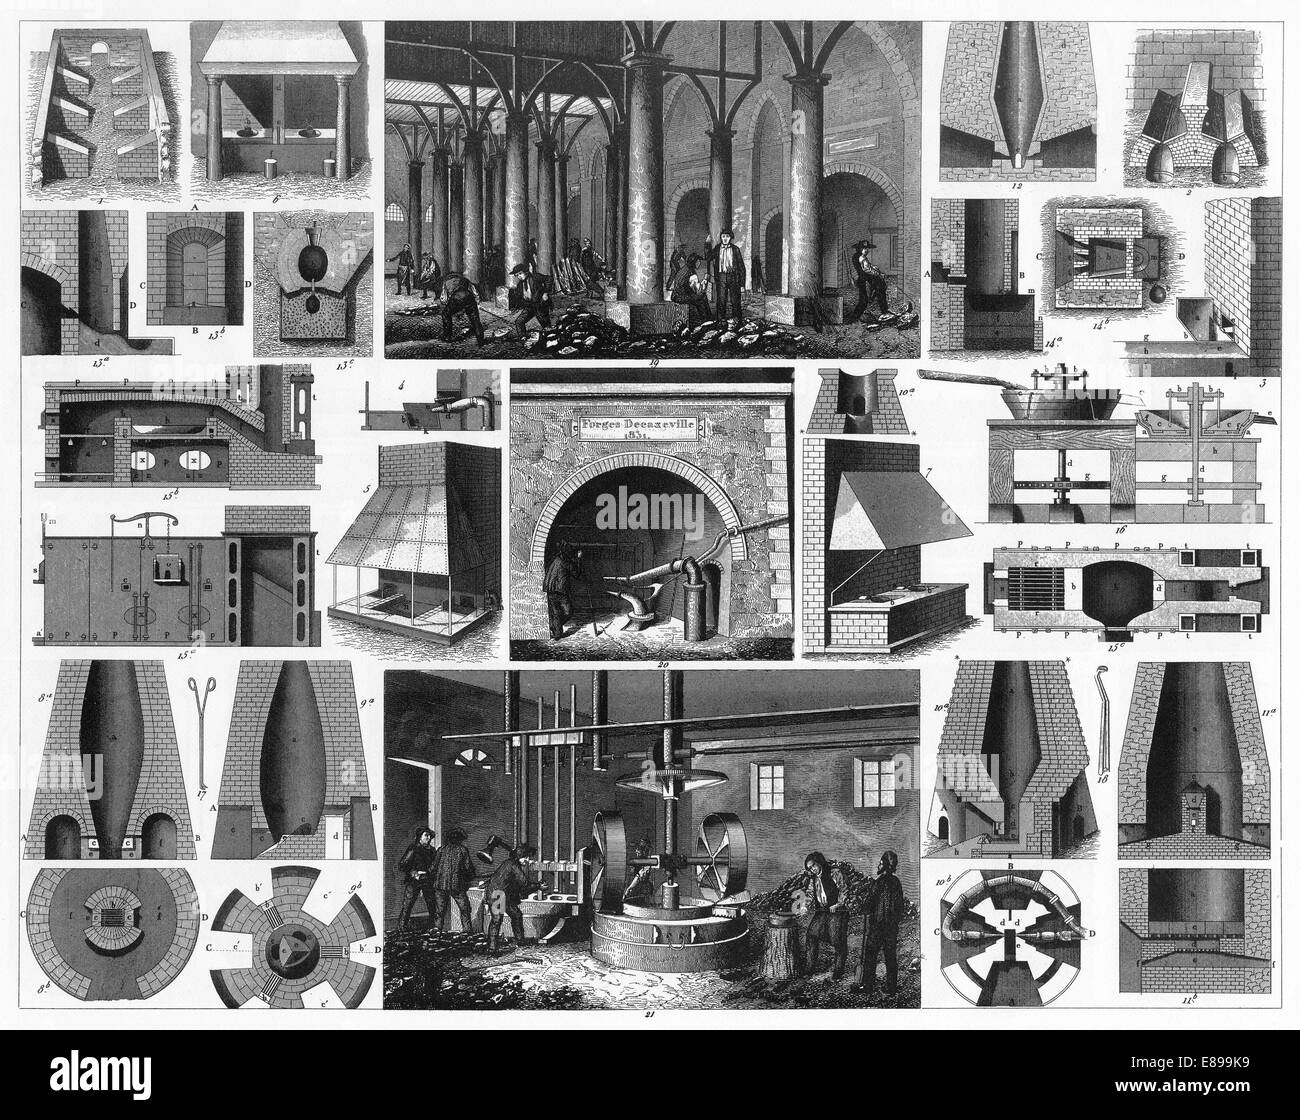 Le illustrazioni incise di fresatura in metallo da enciclopedia iconografico della scienza, letteratura e arte, pubblicato nel 1851. Foto Stock